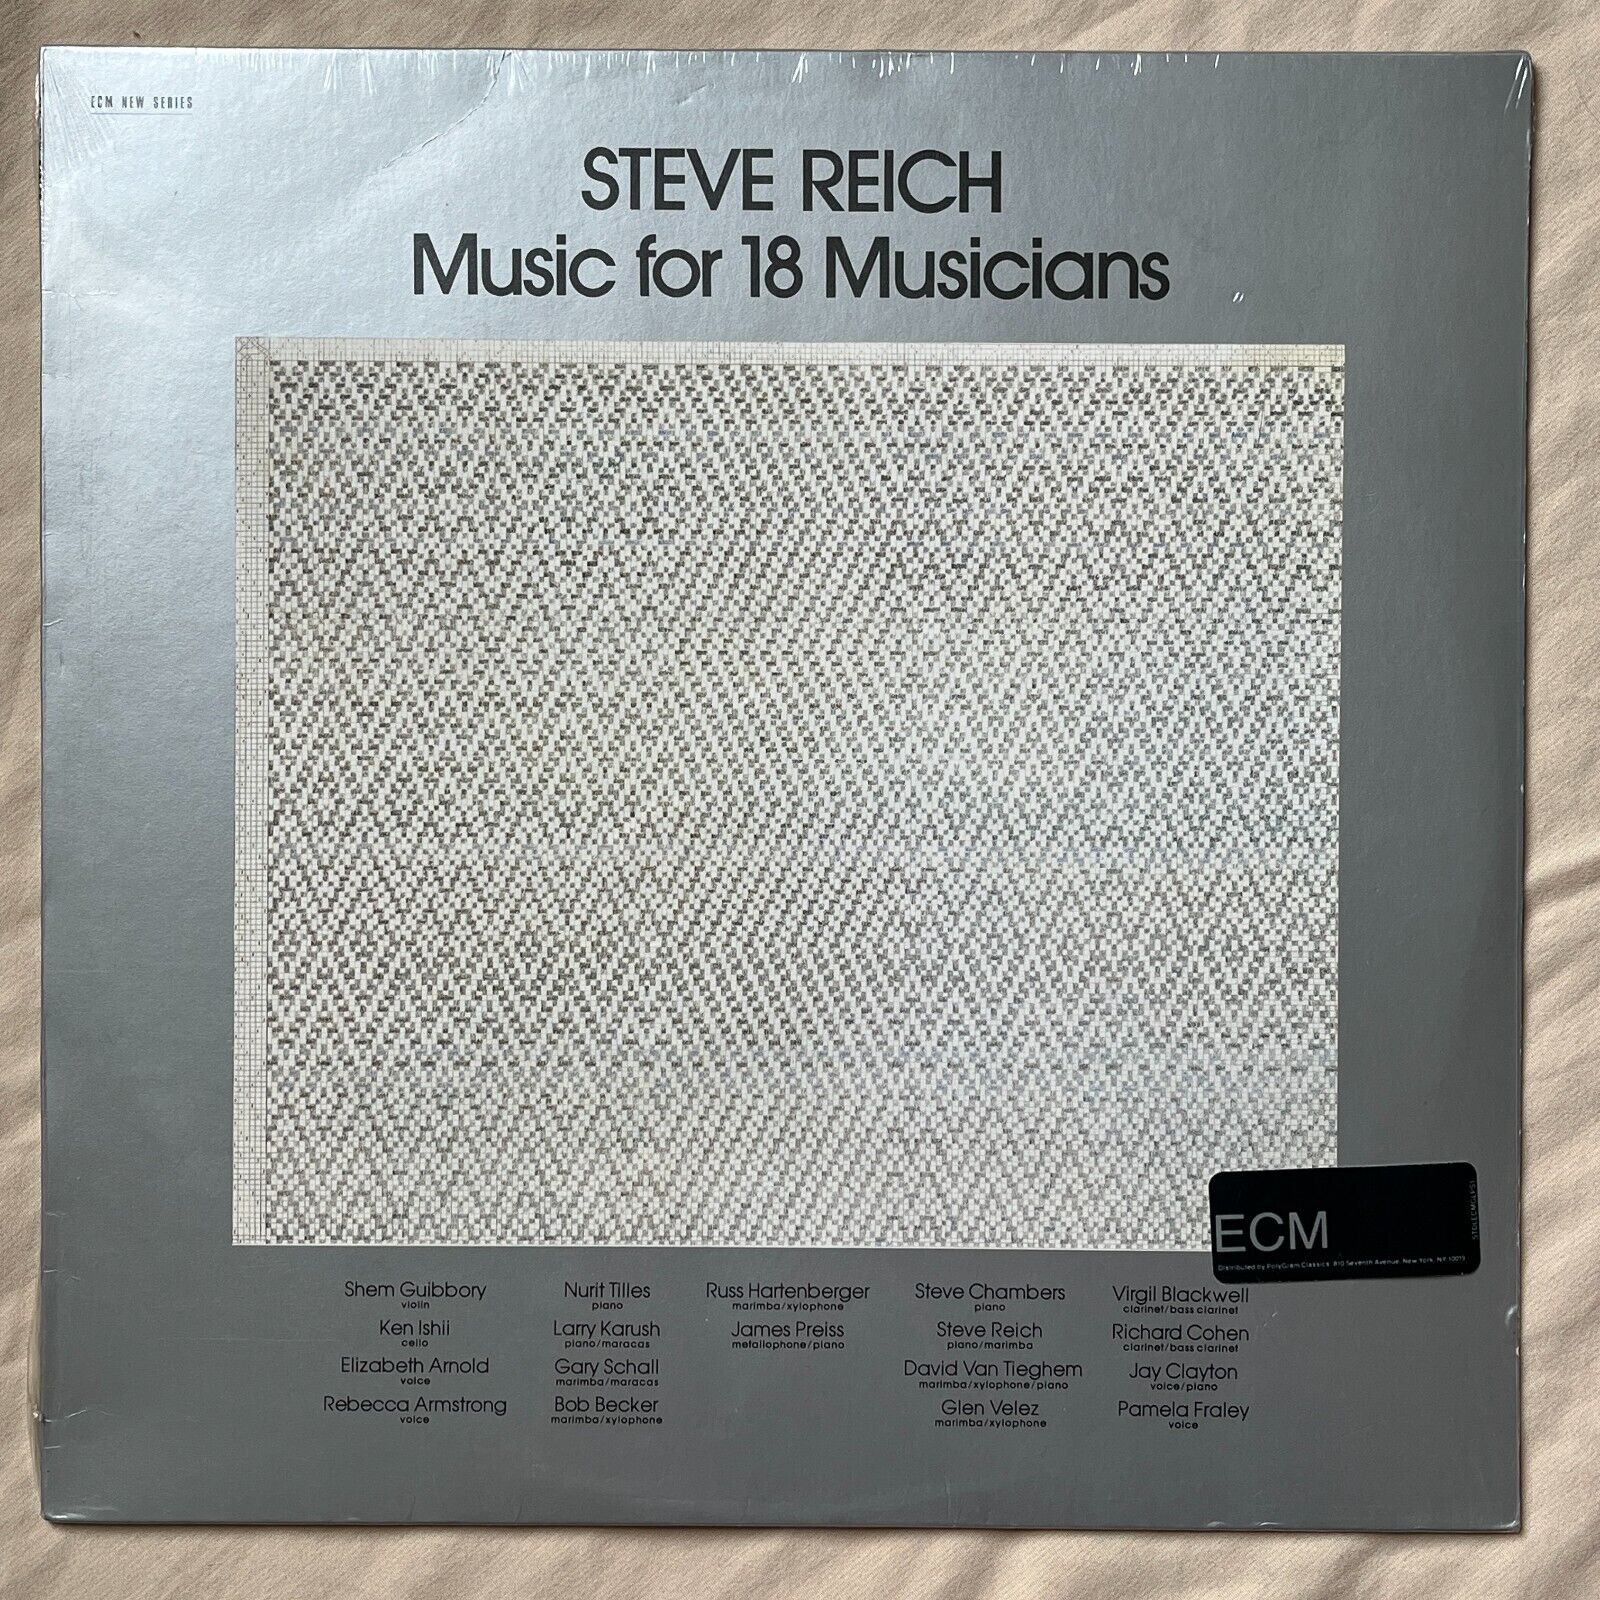 STEVE REICH Music For 18 Musicians 1984 Import Vinyl LP ECM New Series 1129 - NM